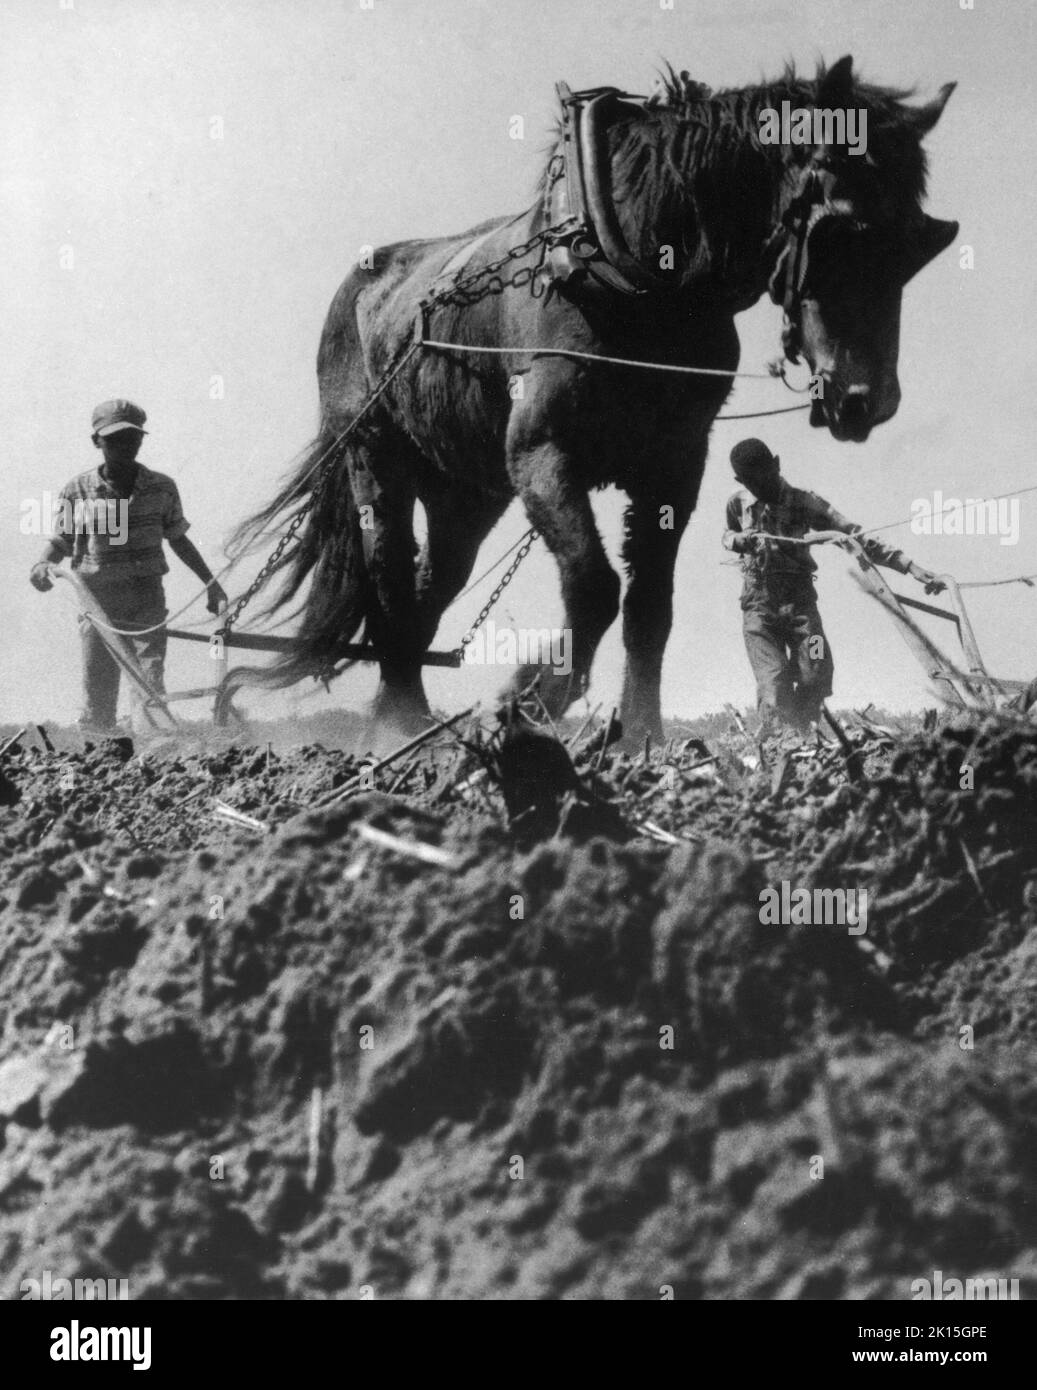 Champ de coton près de Maxton, NC, en préparation pour la plantation.Vers le milieu du 20th siècle dans le sud, les mules étaient encore utilisées dans de nombreux endroits pour préparer les champs de coton aux fins de plantation; 1959. Banque D'Images